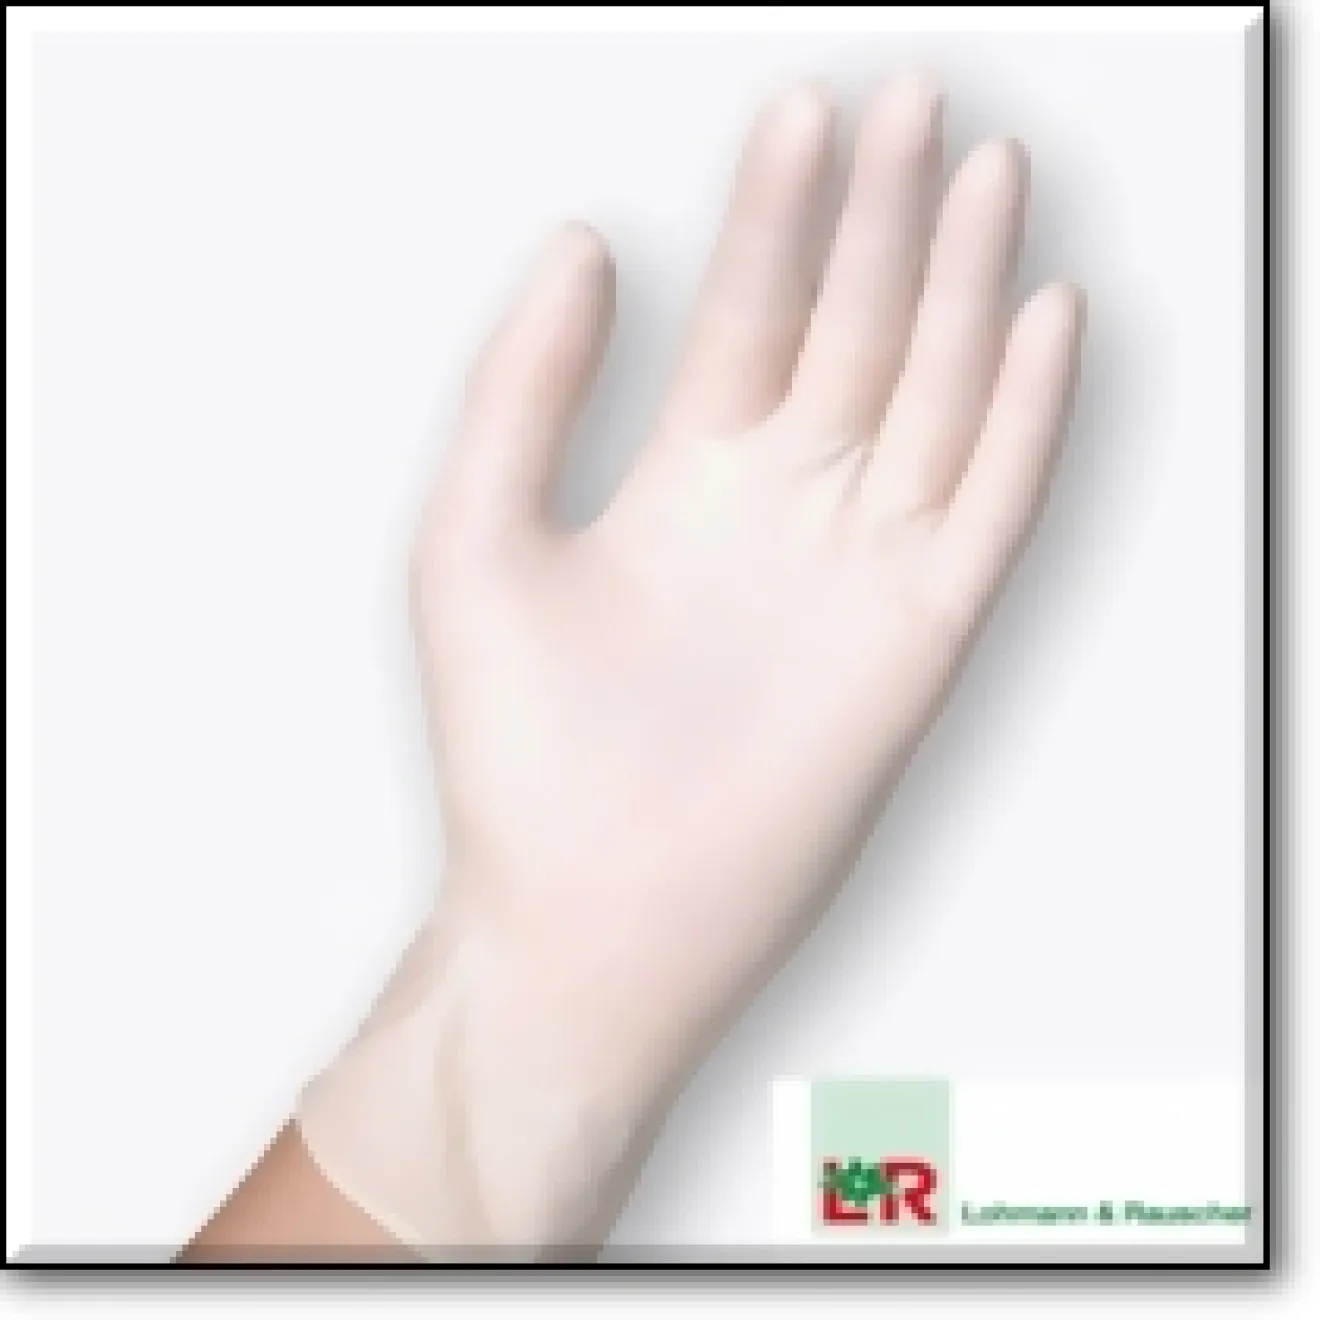 SENTINA Ambidextrous Untersuchungs Handschuhe ungepudert L 100 ST